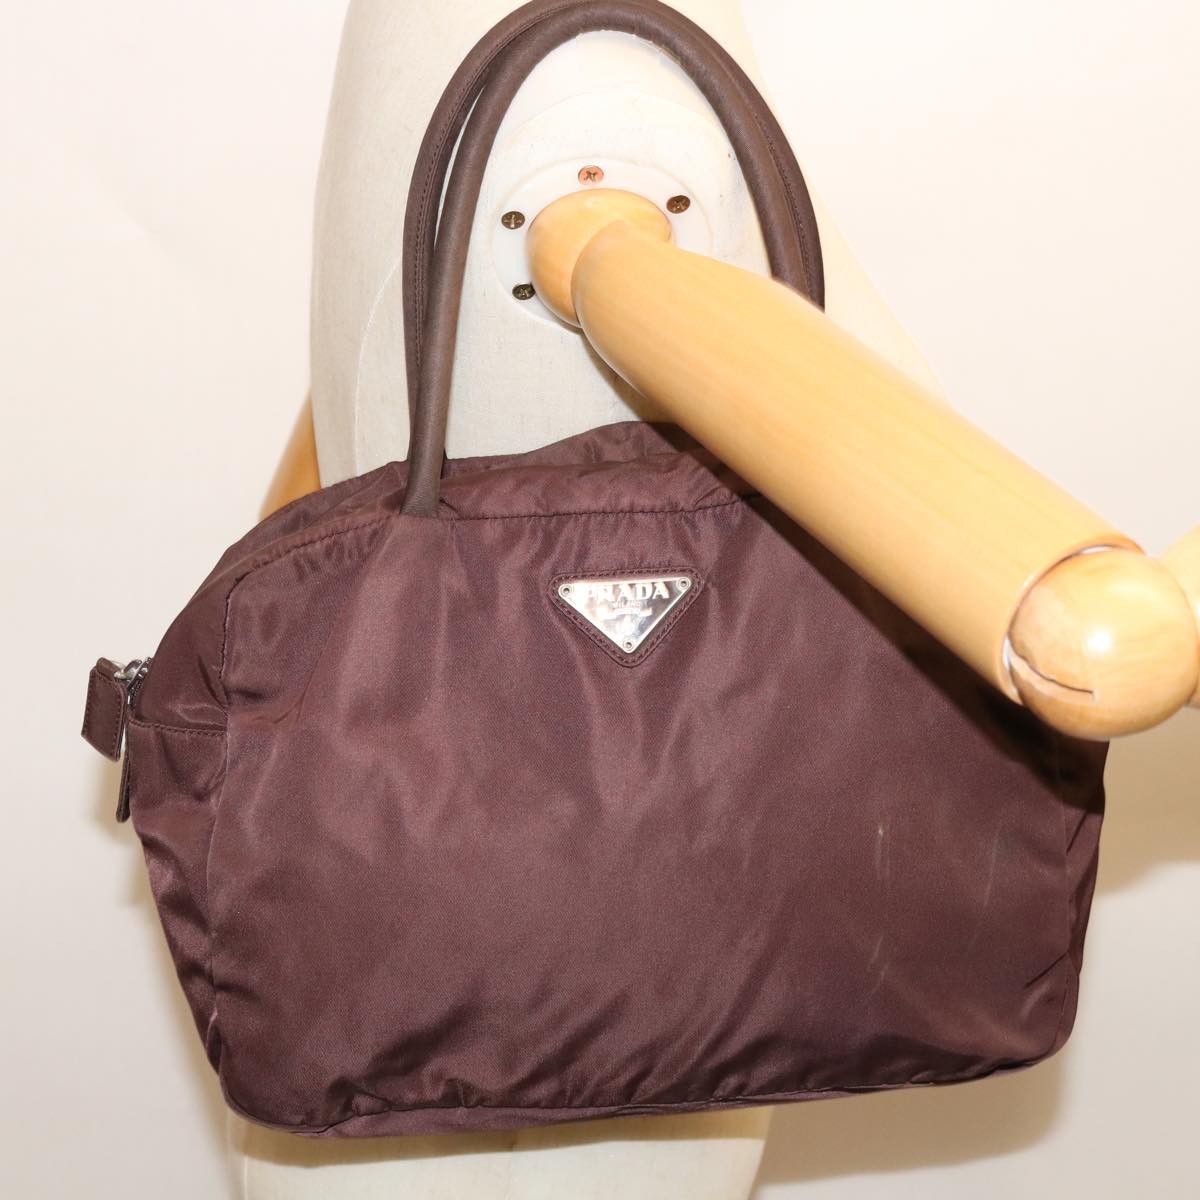 Prada Prada Tessuto handbag Size ONE SIZE - 7 Thumbnail